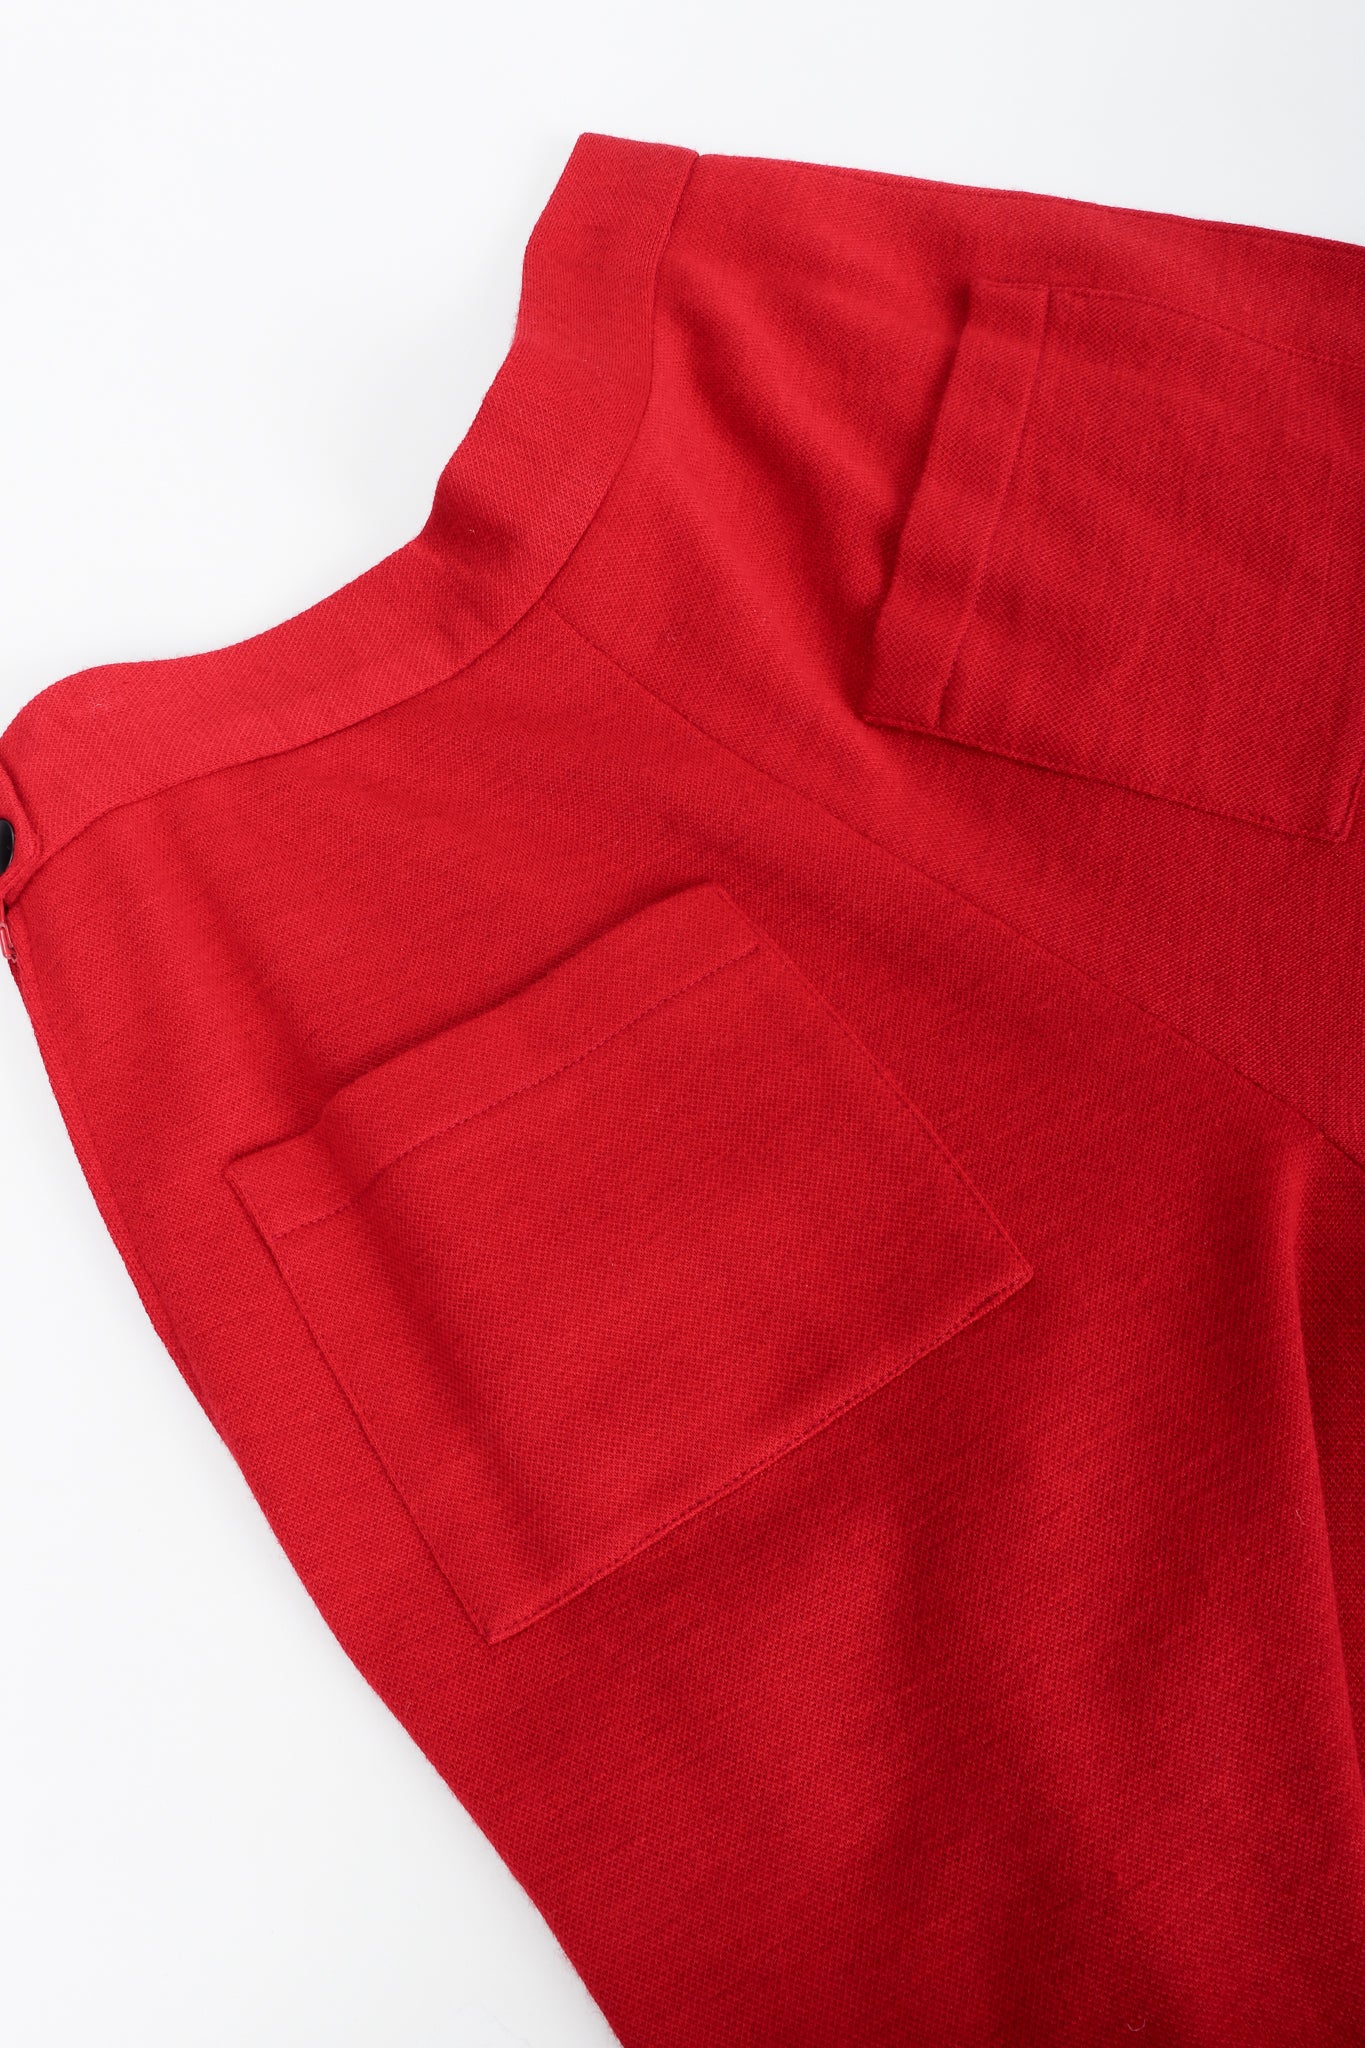 Vintage Sonia Rykiel Red Knit Pant Set pocket Detail at Recess